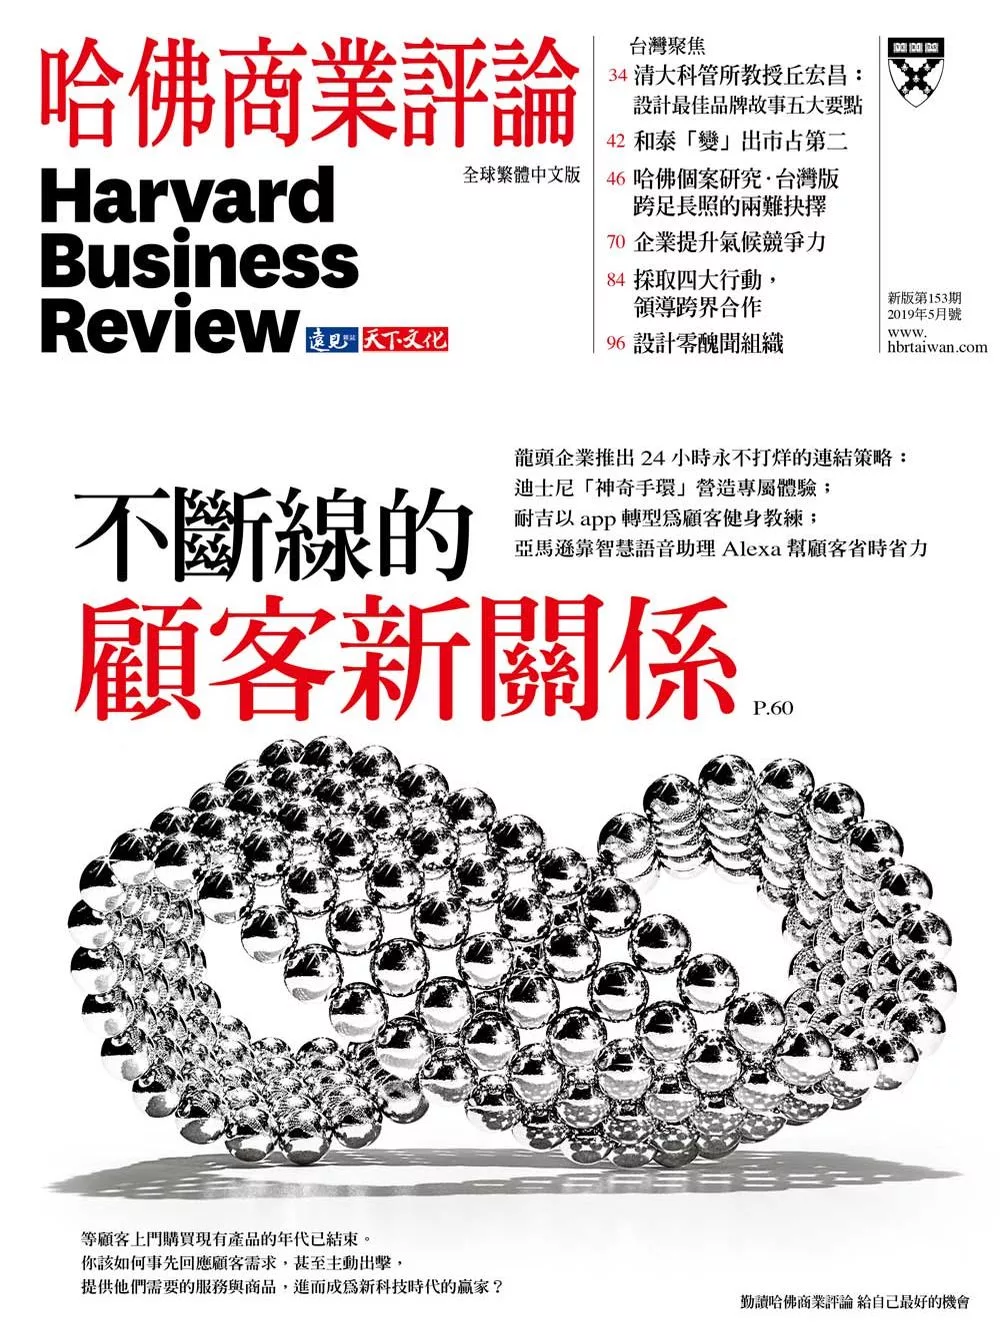 哈佛商業評論全球中文版 05月號/2019第153期 (電子雜誌)